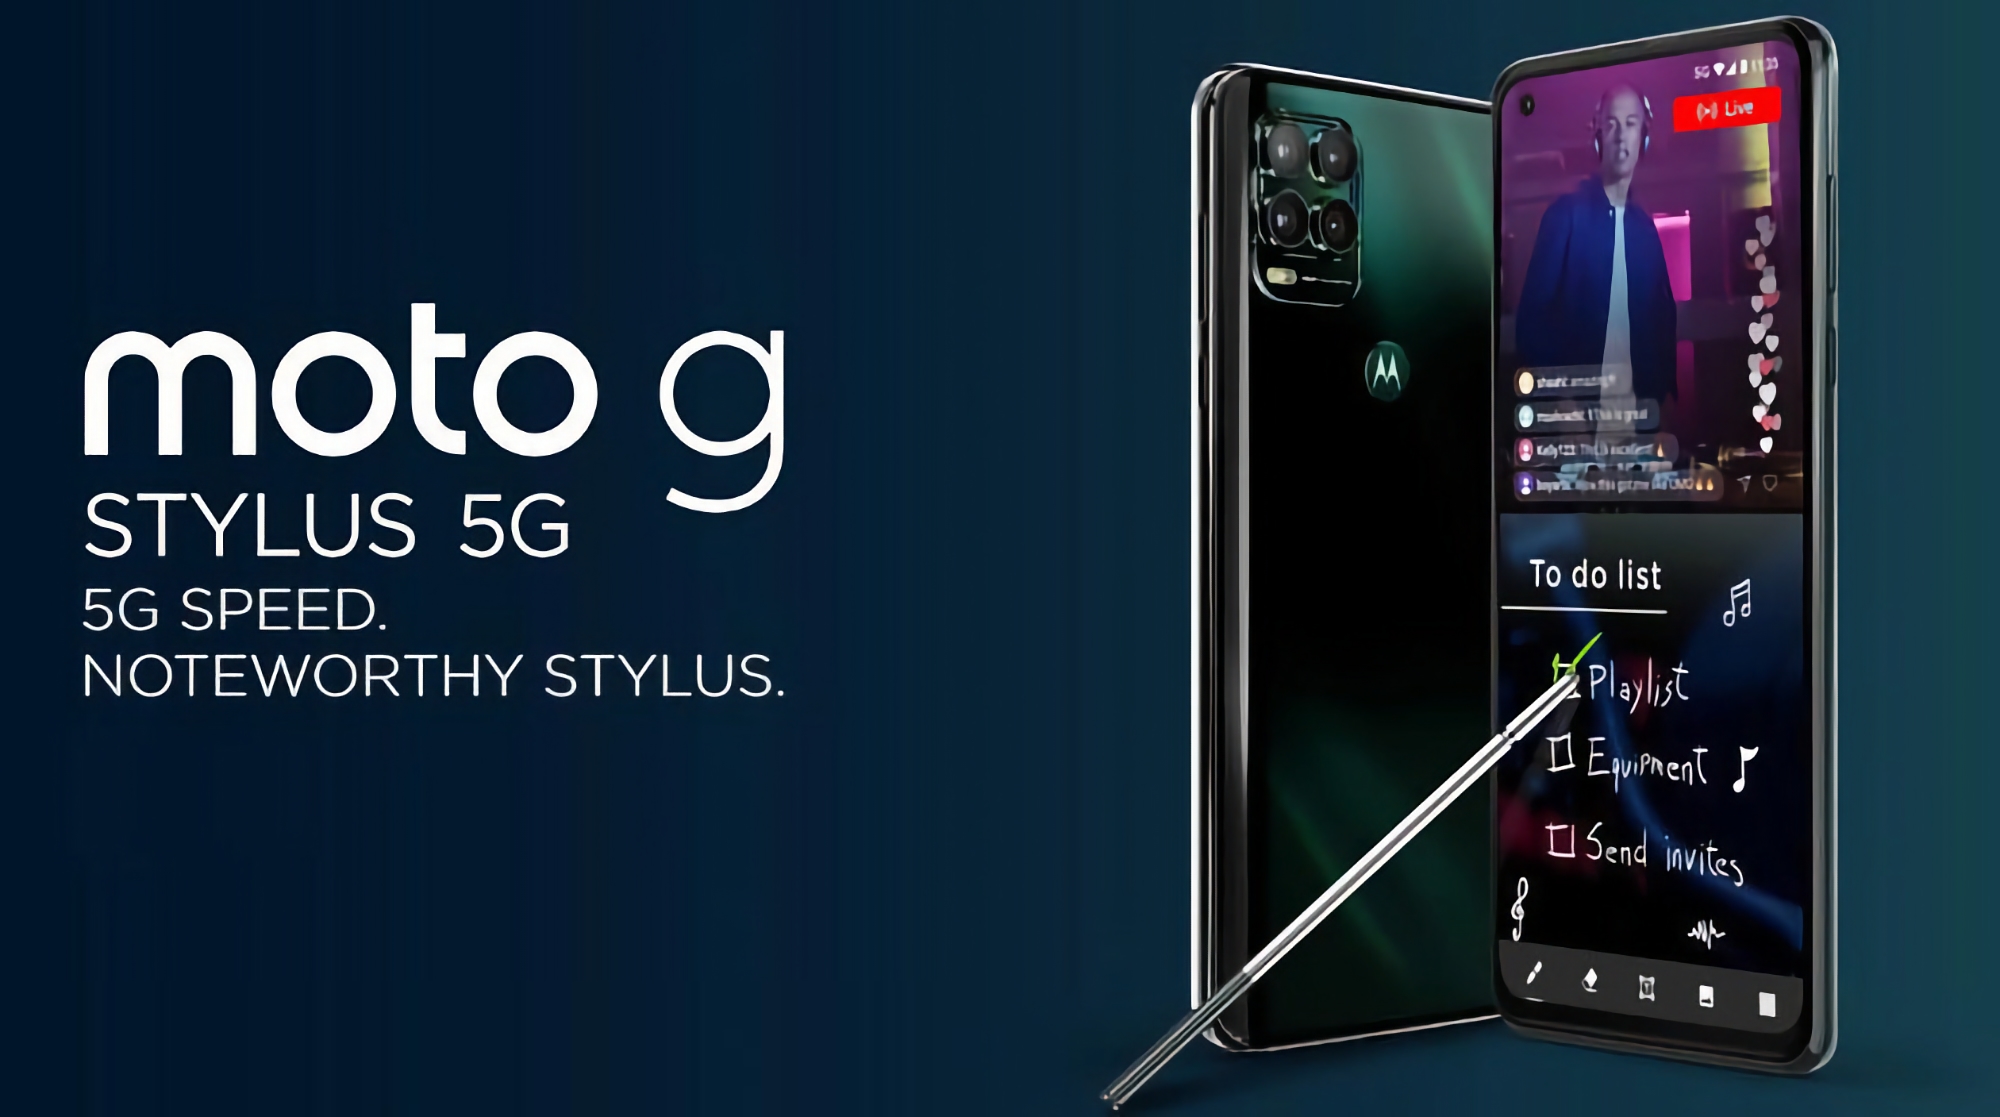 Moto G Stylus 5G (2021) mit Snapdragon 480-Chip, 48 MP-Kamera und Stylus bei Amazon für $200 weniger erhältlich